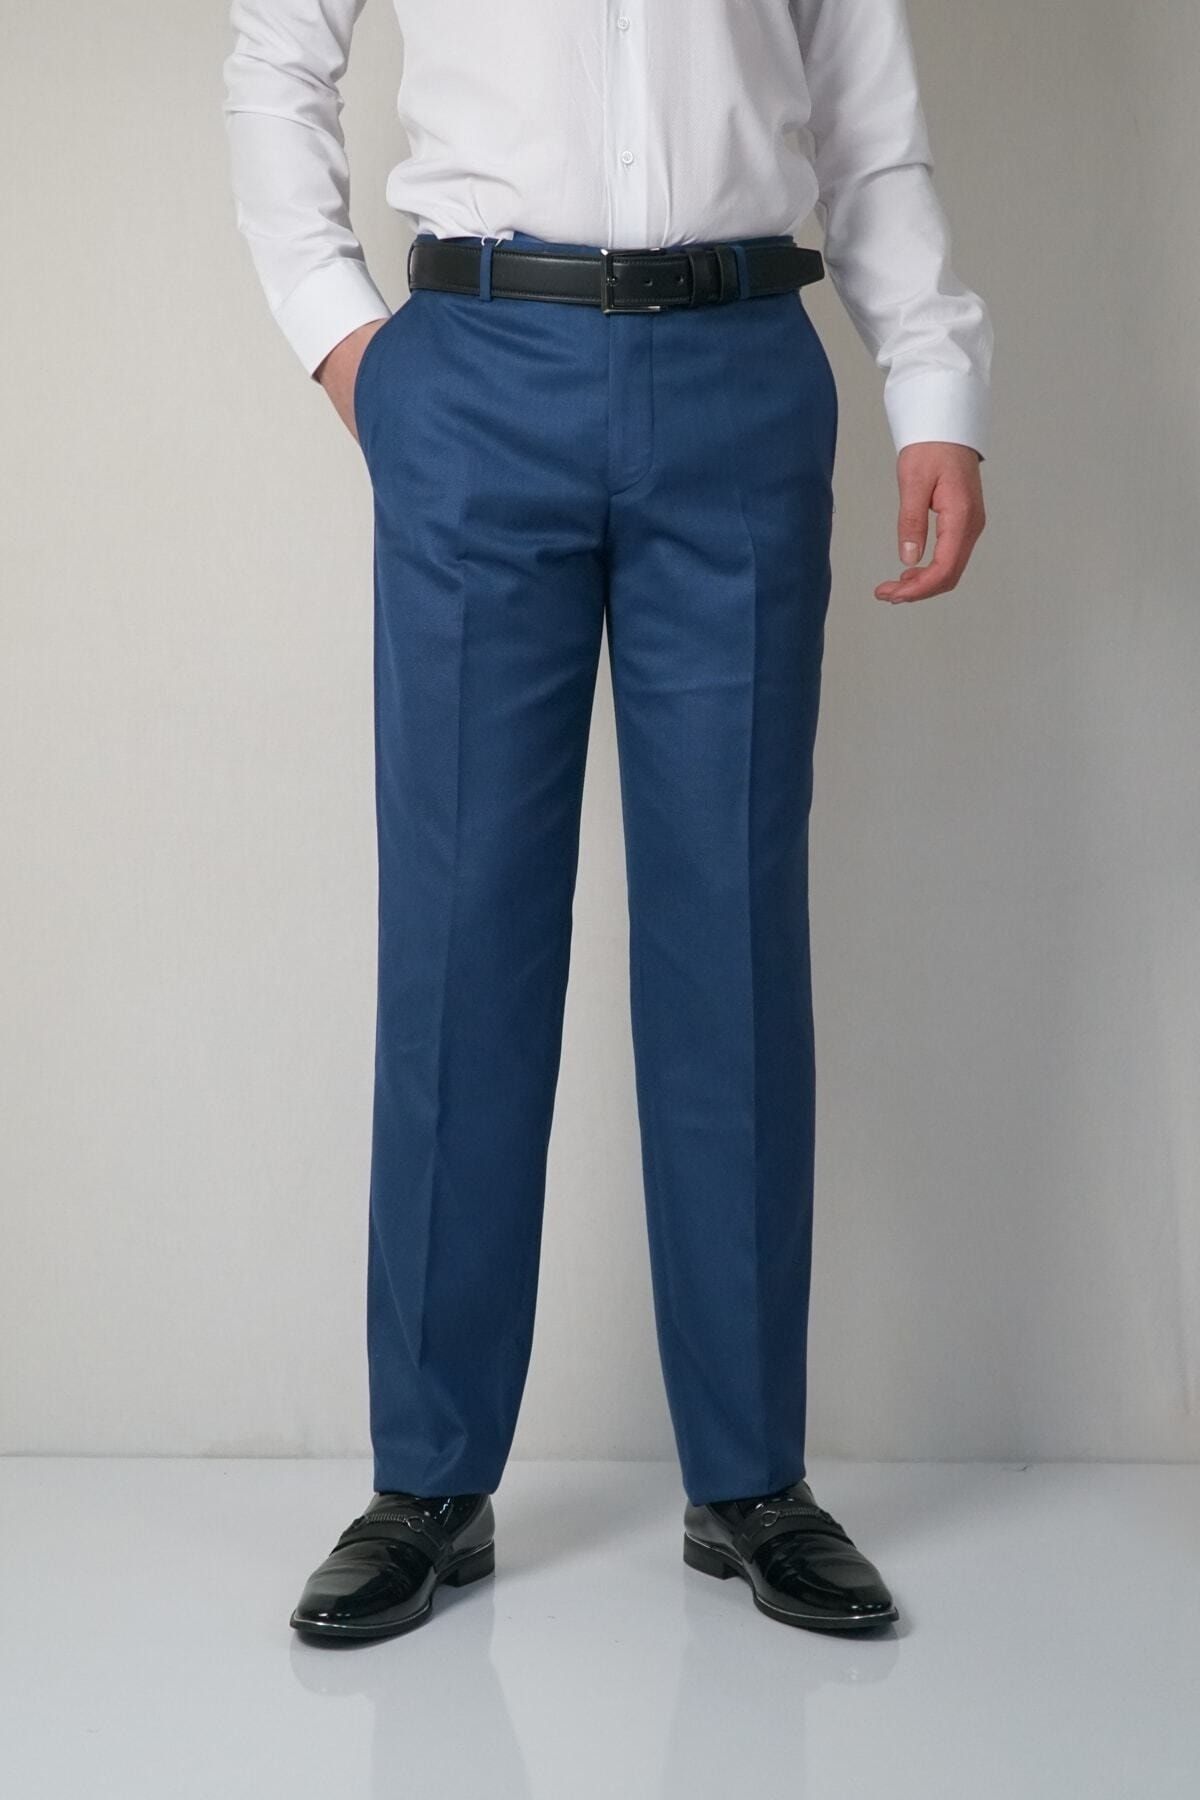 Bomonti Kılasık Fılafıl Kumaş Pantolon